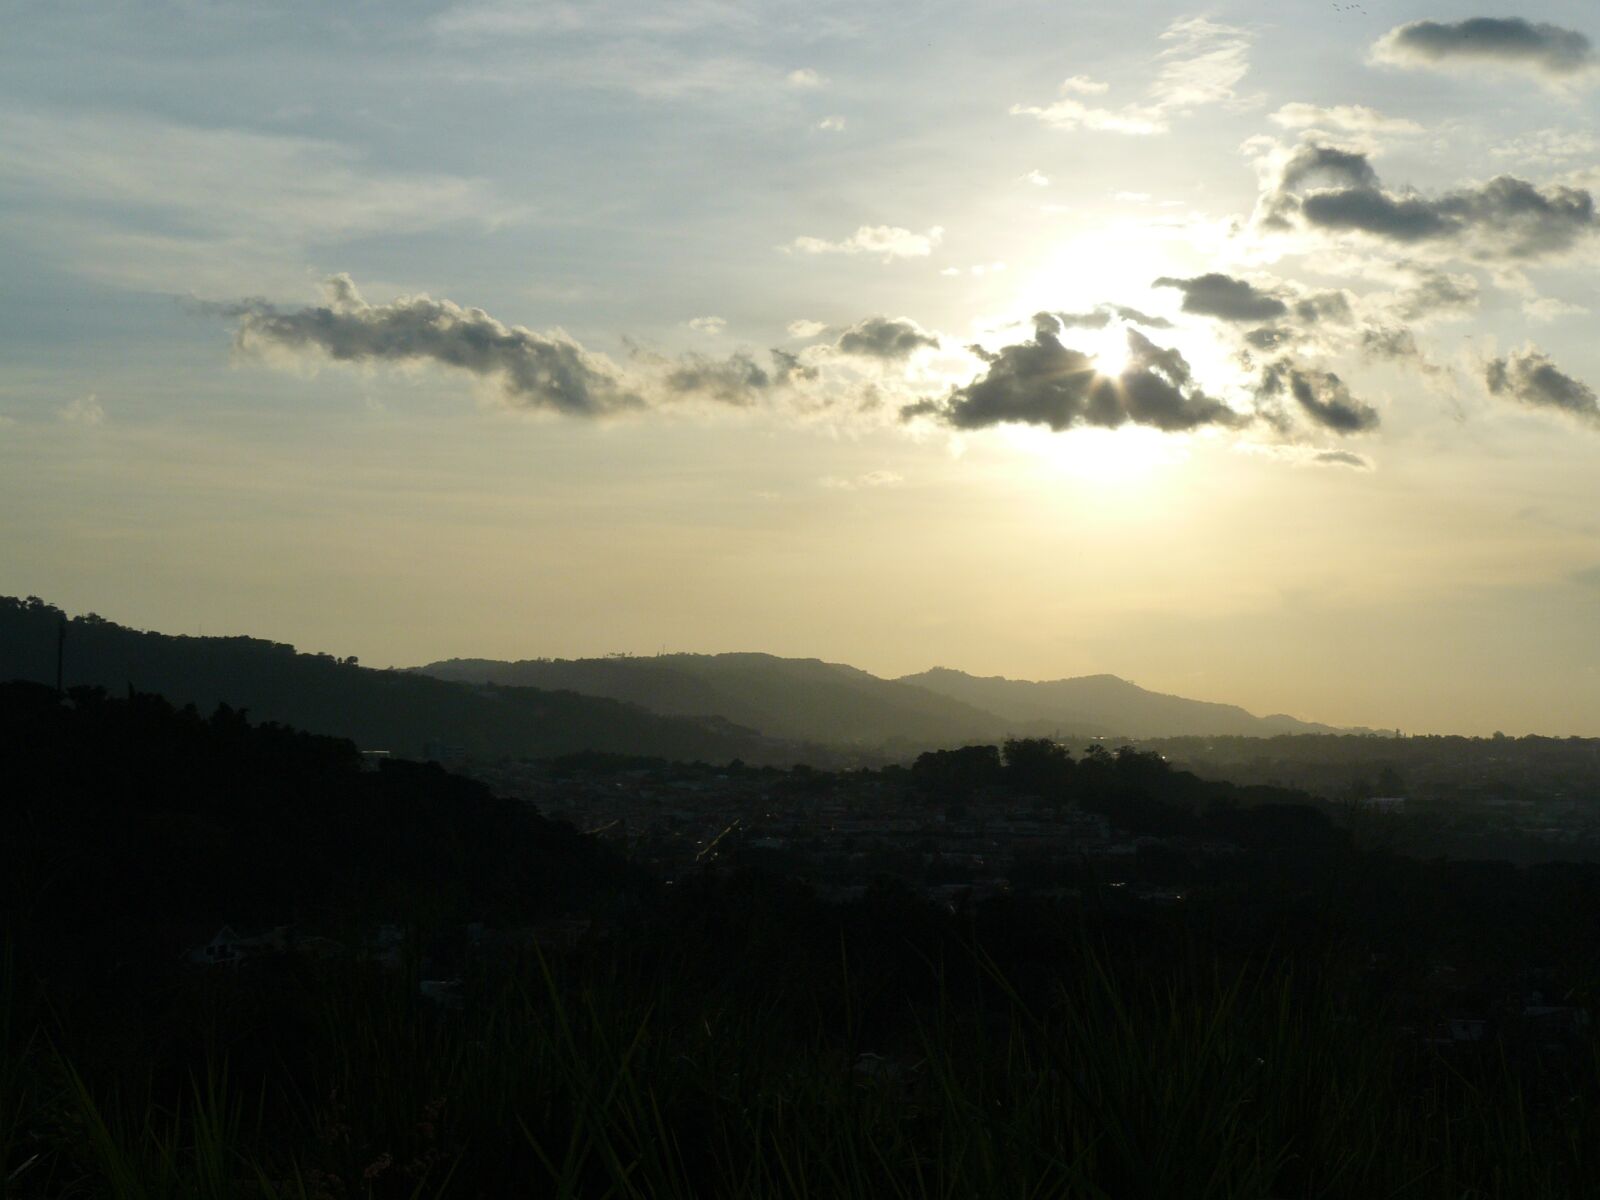 Panasonic DMC-FZ8 sample photo. Sunset, el salvador, mountains photography